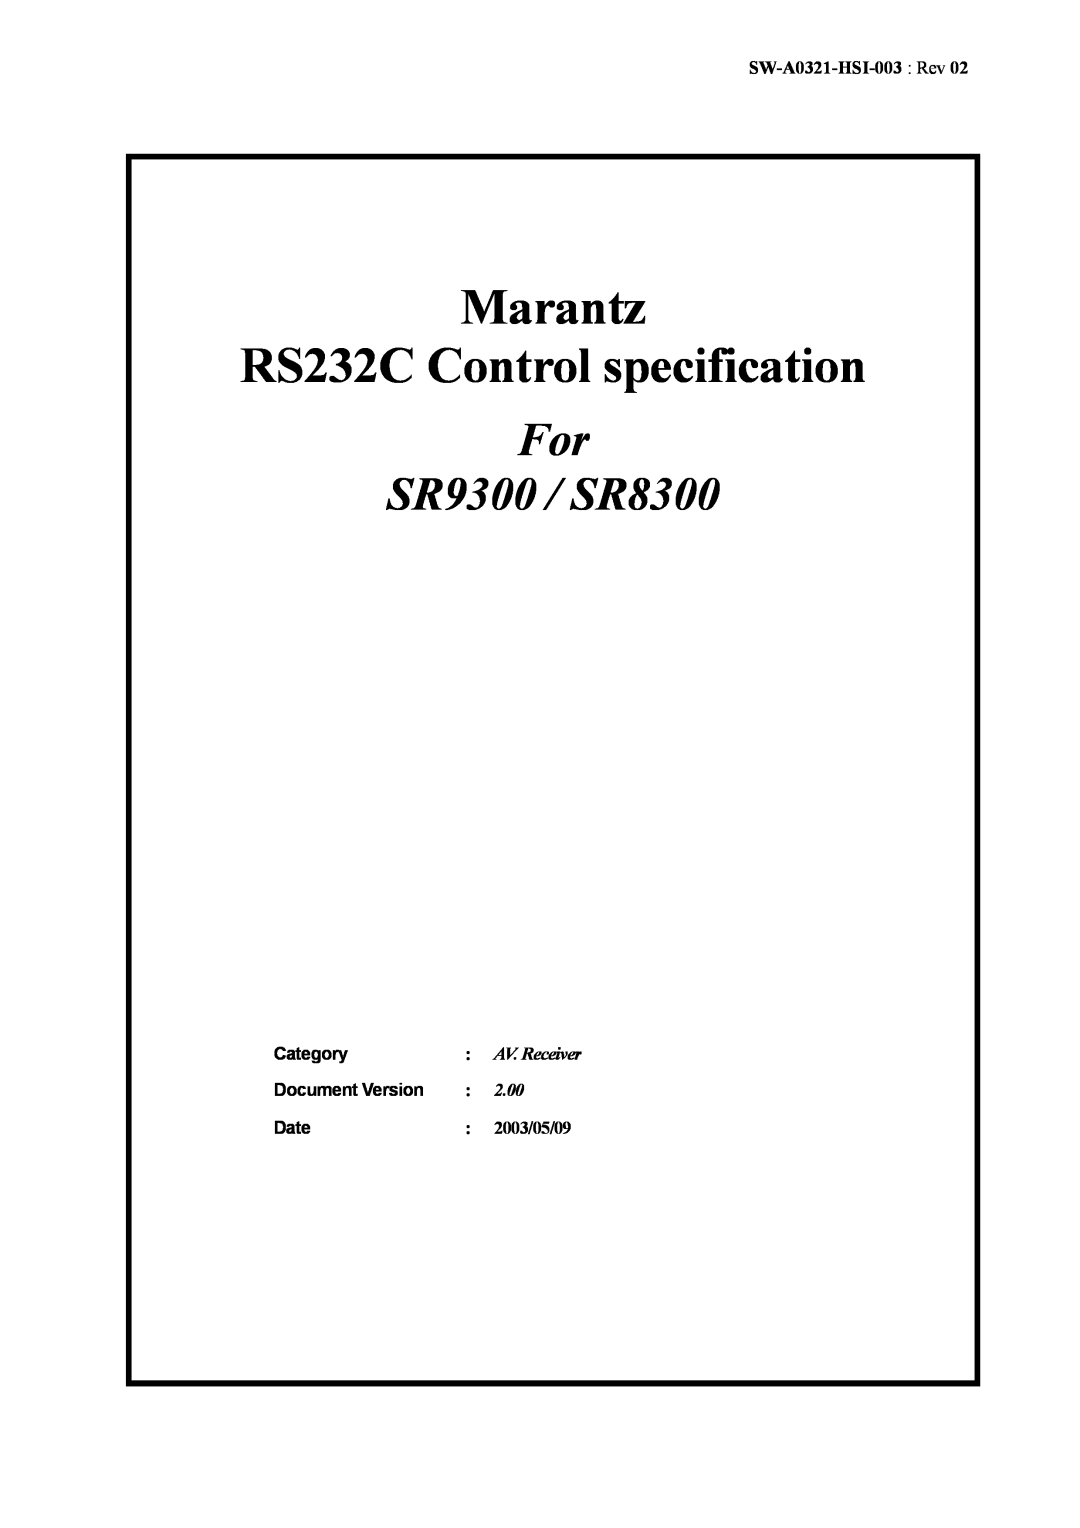 Marantz manual SW-A0321-HSI-003 Rev, 2.00, 2003/05/09, Marantz RS232C Control specification, For SR9300 / SR8300 